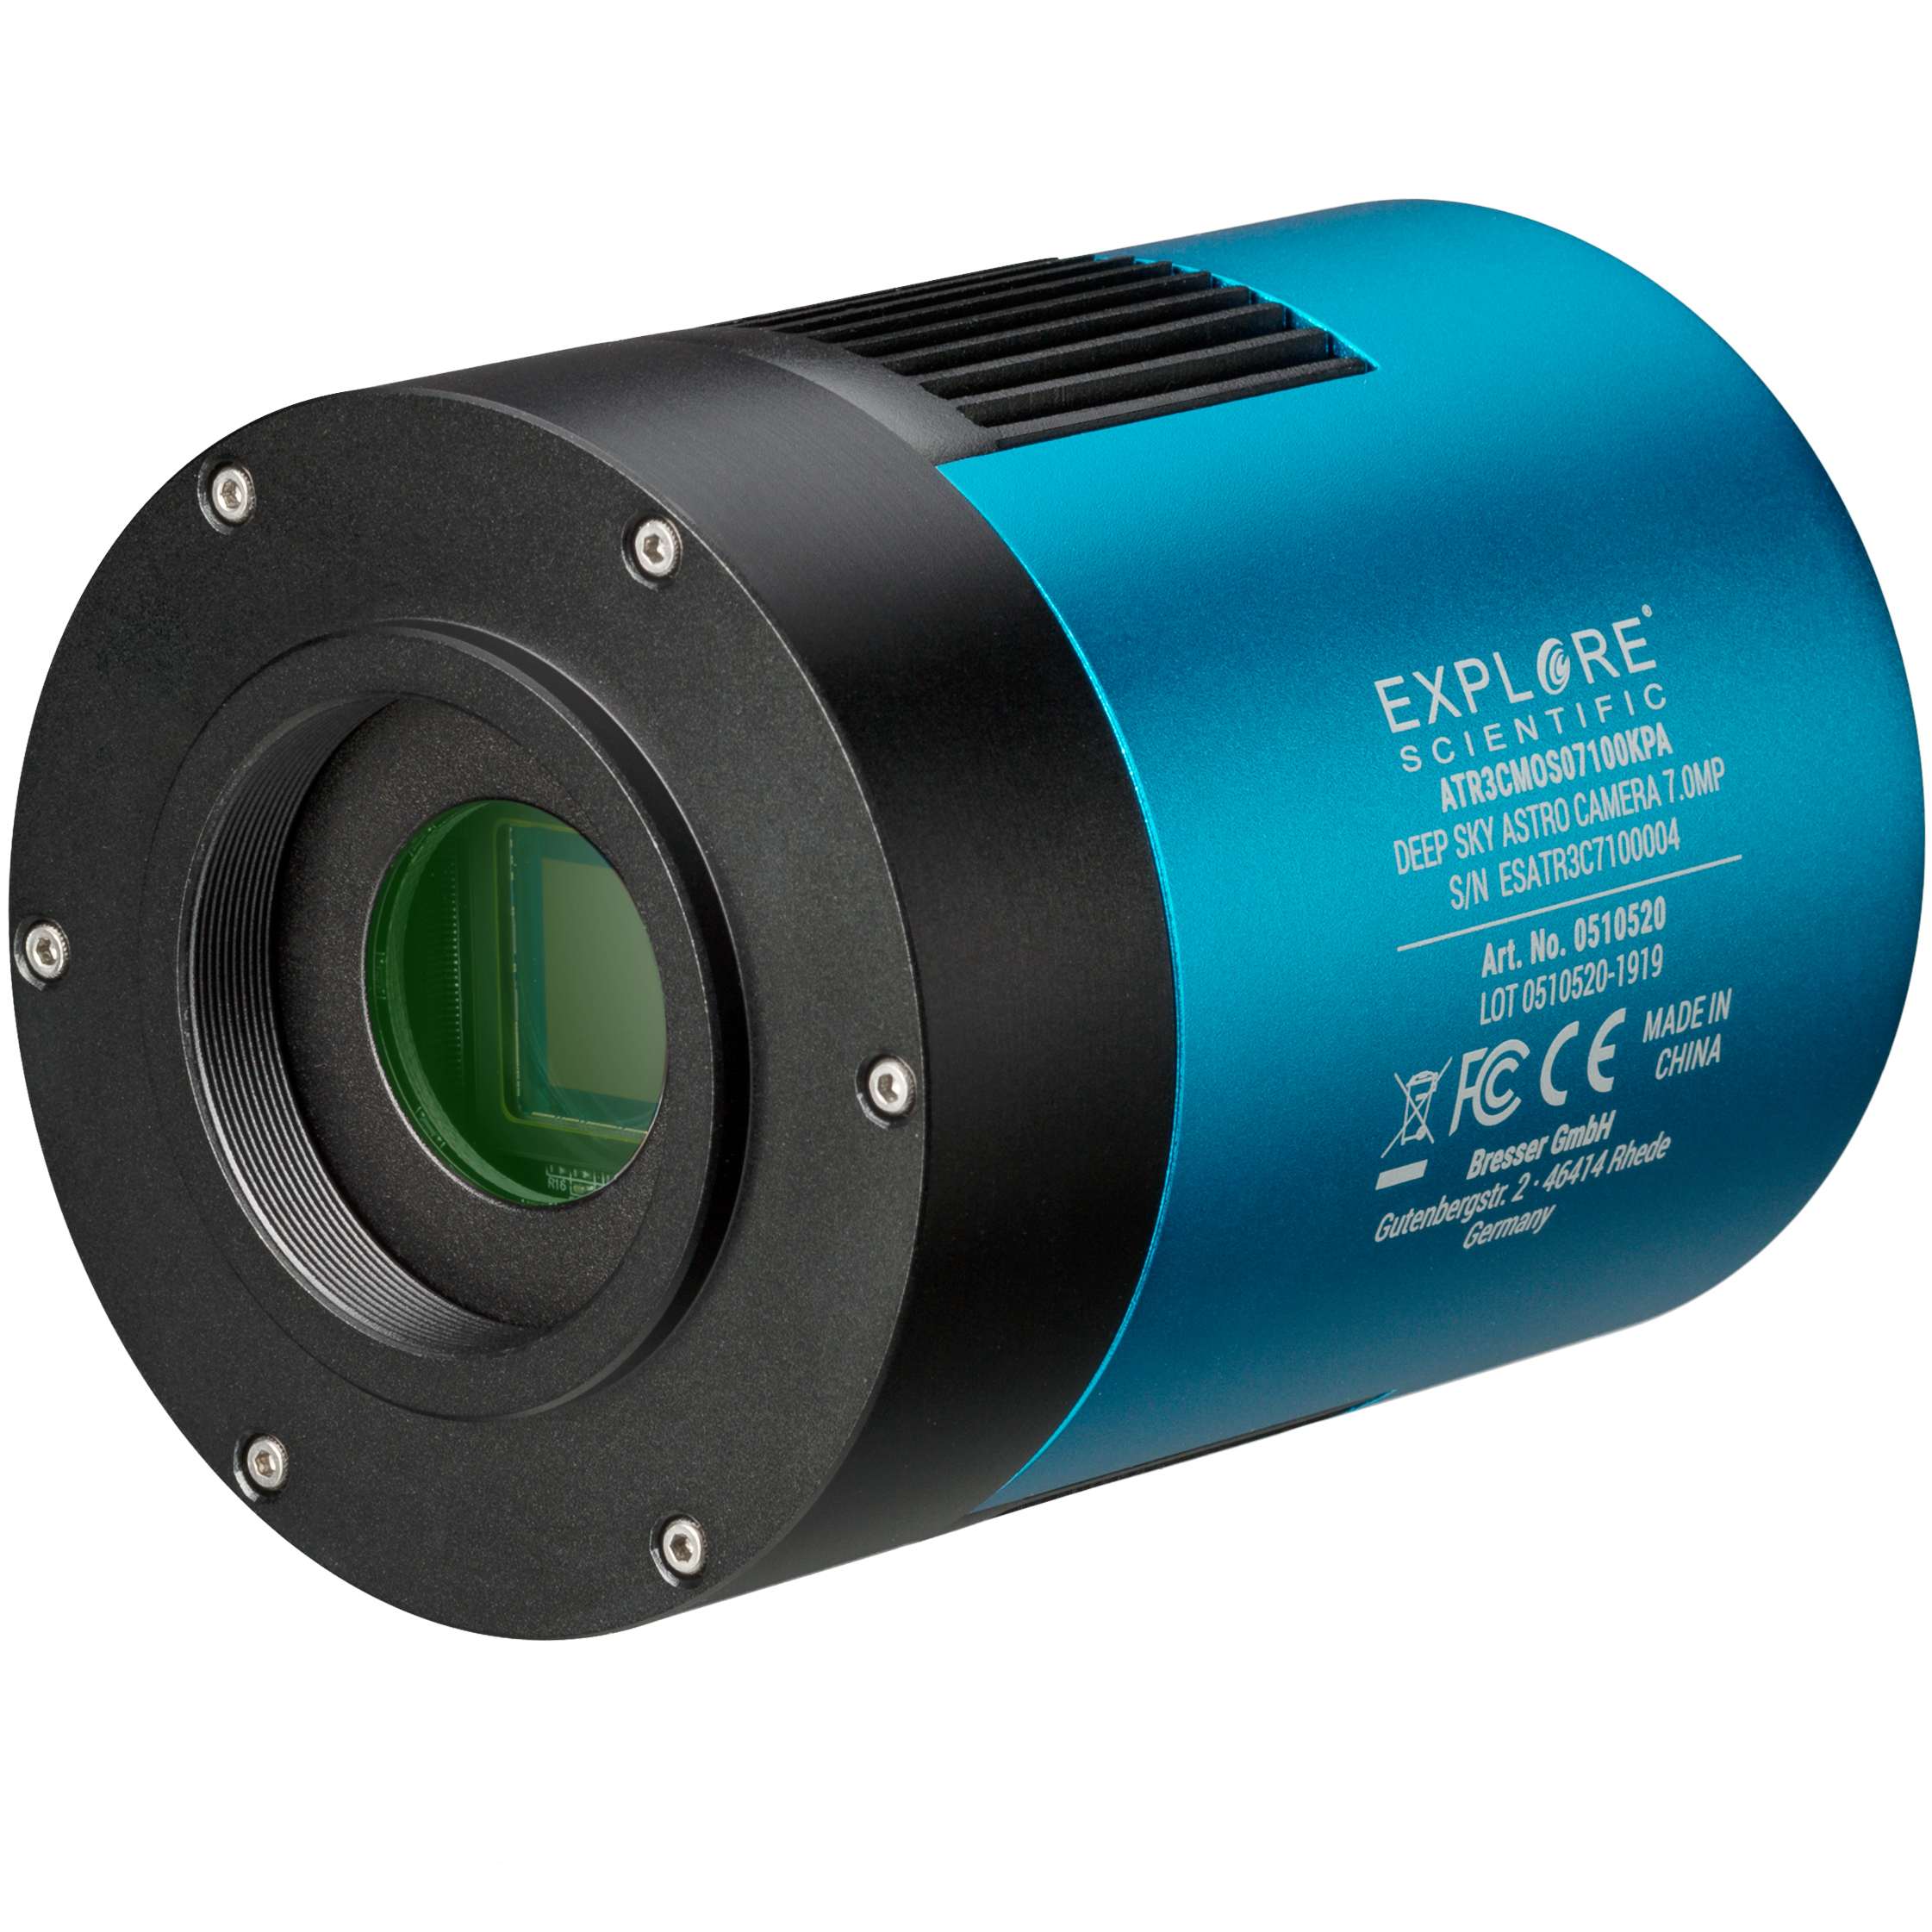 Matériel pour télescope  Caméra USB pour astrophoto et observation